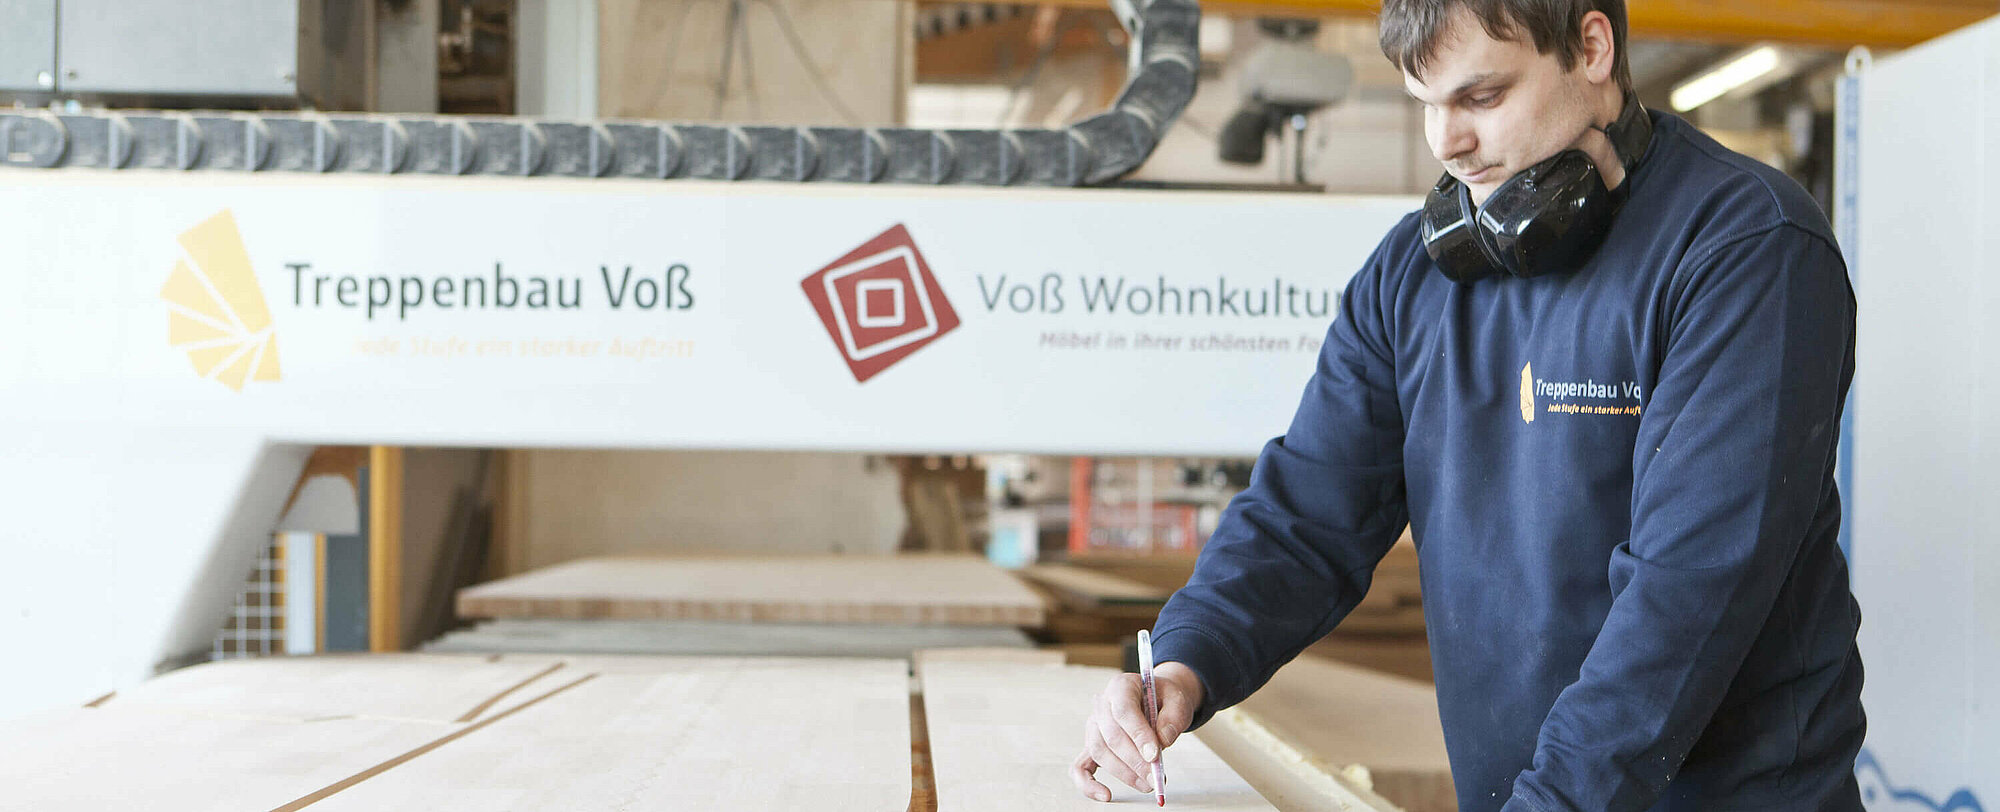 Treppenbau Voß GmbH & Co. KG produziert mehrere tausend Treppen im Jahr.